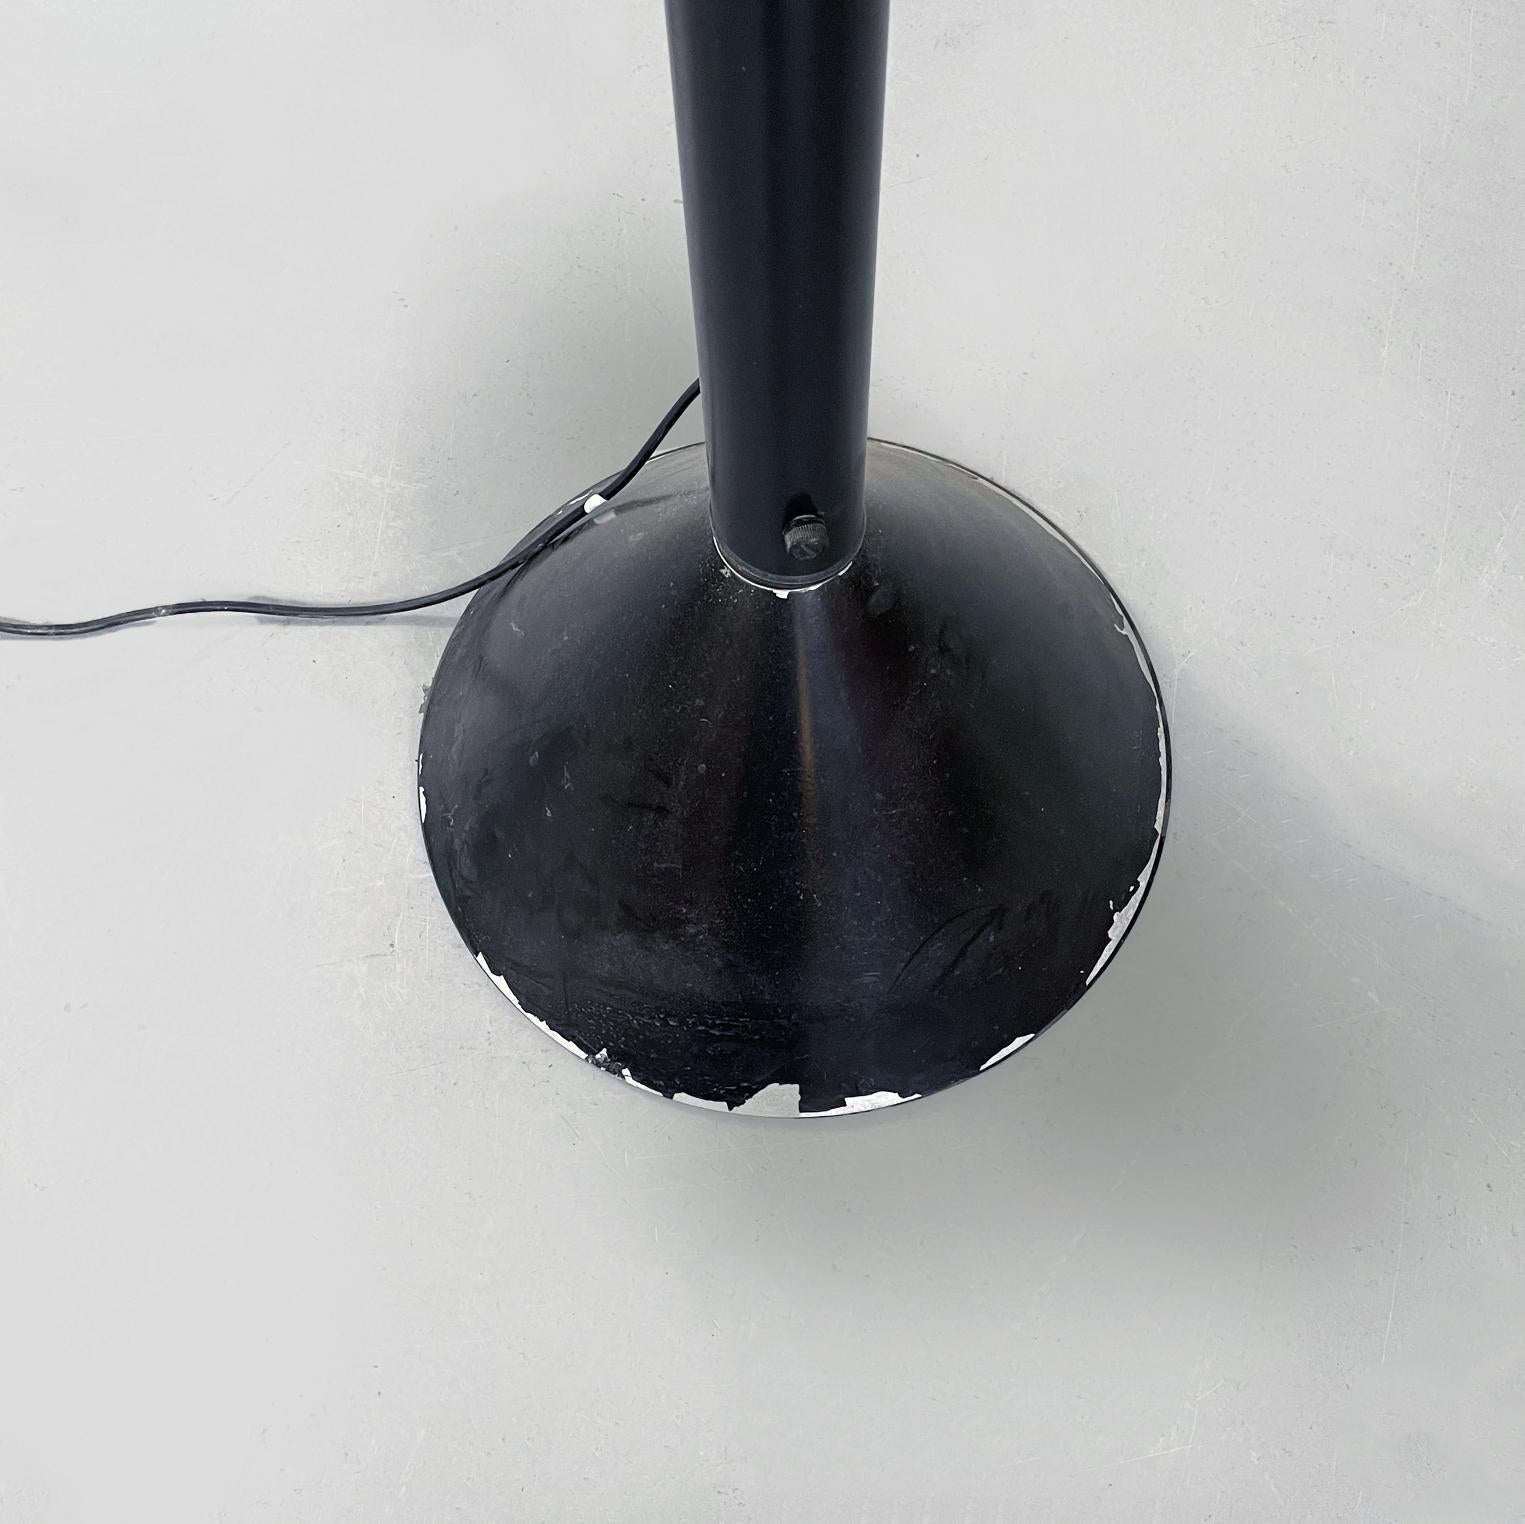 Italienische Callimaco Stehleuchte aus schwarzem Stahl, Mitte des Jahrhunderts, von Ettore Sottsass für Artemide, 1980er Jahre.
Callimaco Stehleuchte mit konischem Sockel aus schwarz lackiertem Stahl. Die Struktur besteht aus einem Stiel, auf dem